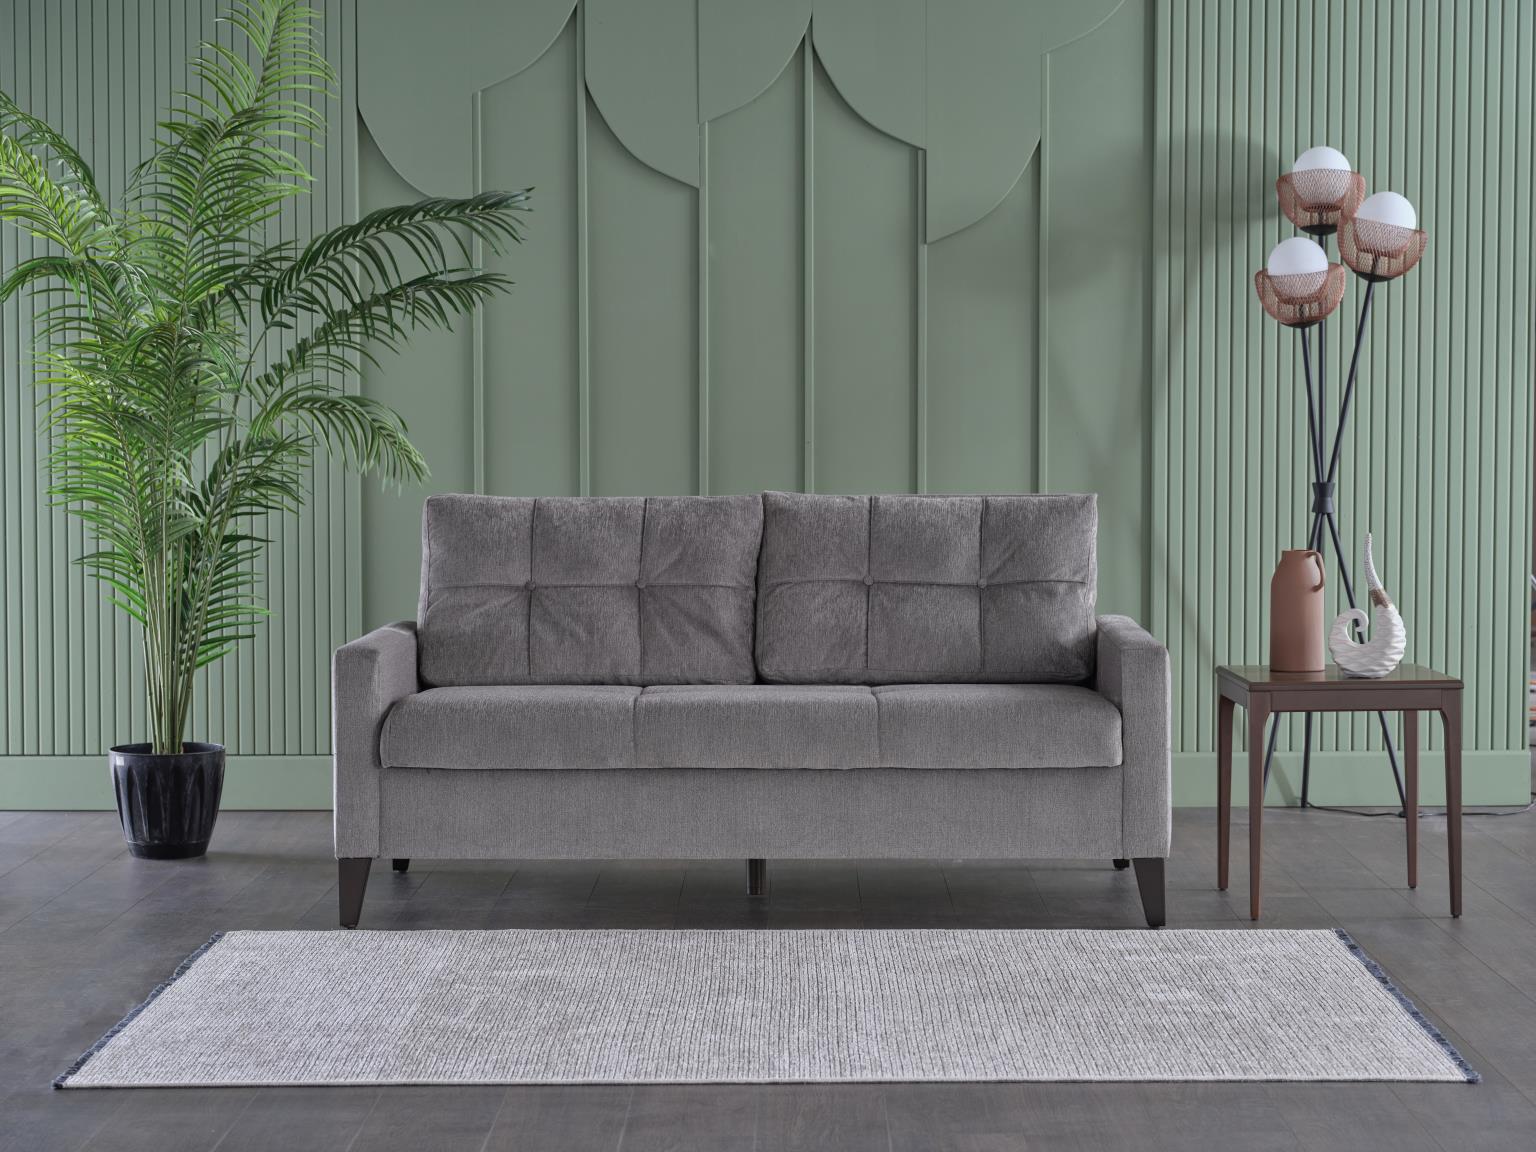 Emmett Sleeper Sofa - Home Store Furniture